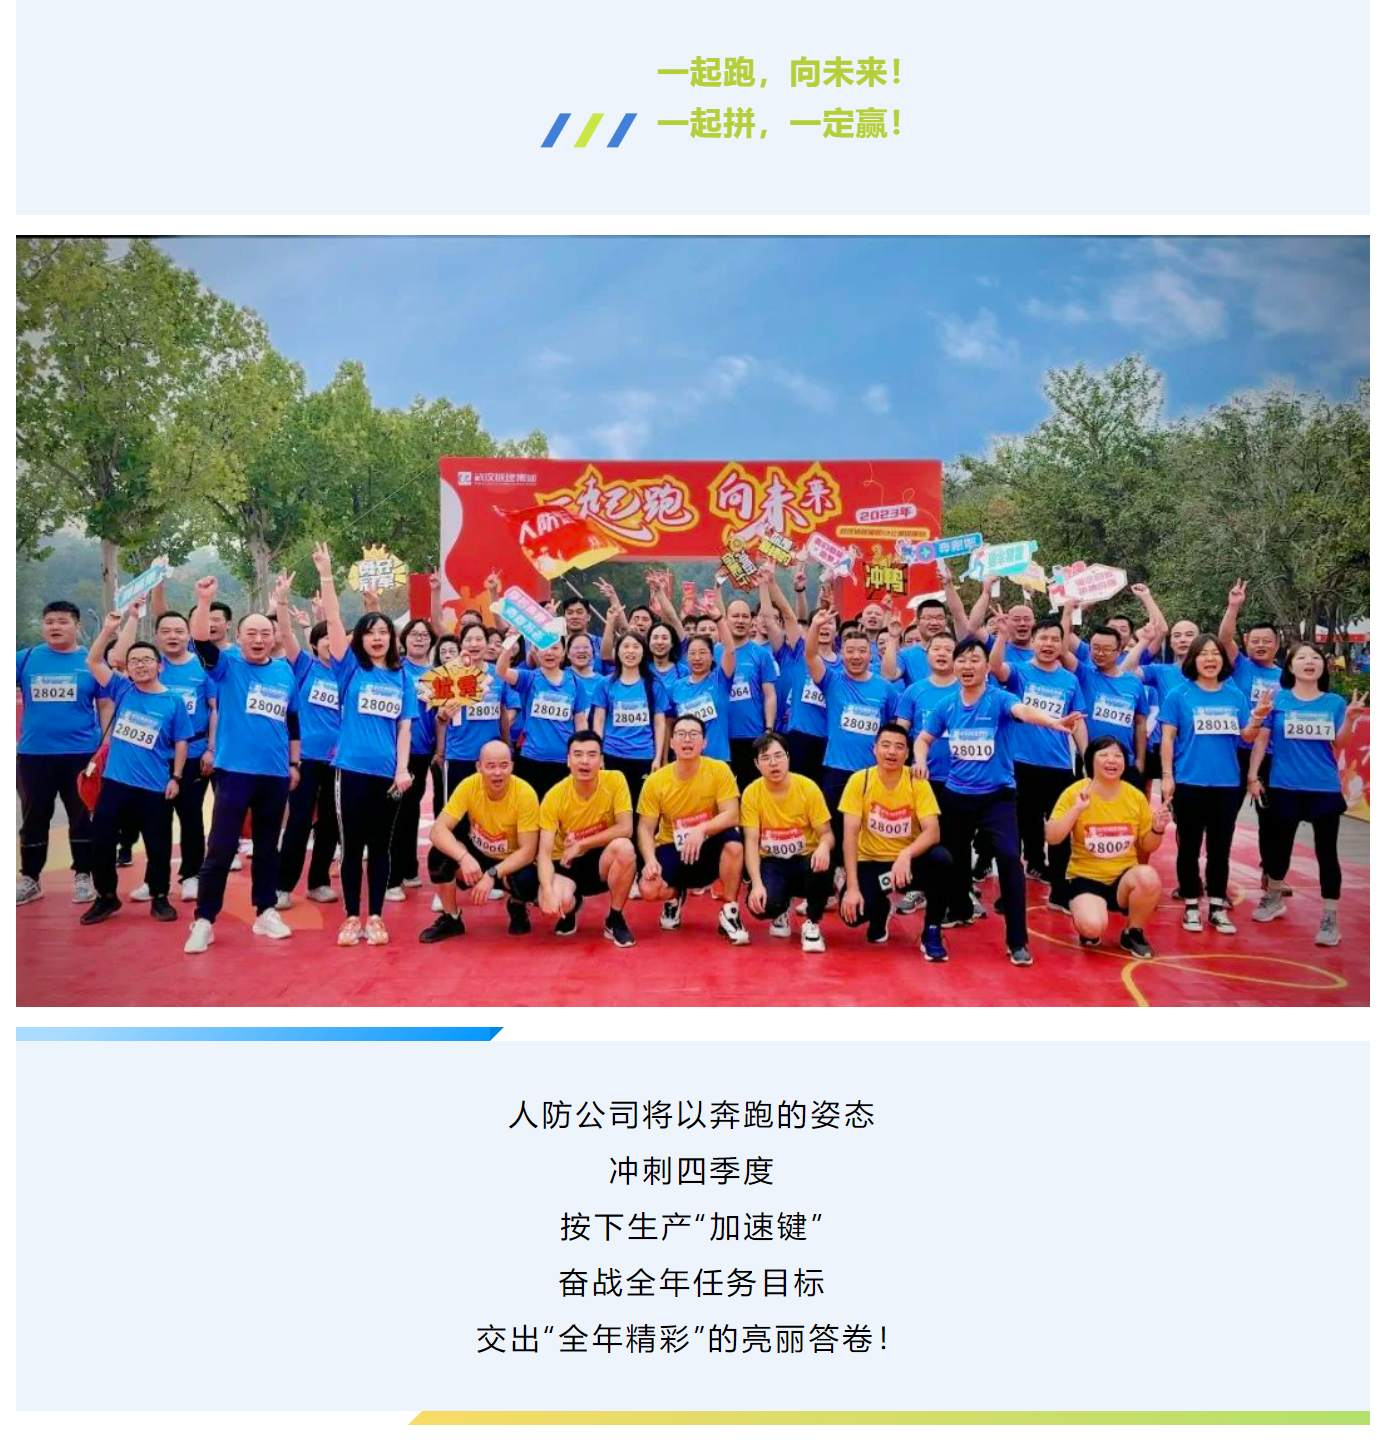 凝心聚力向前跑 擘画新篇向未来丨人防公司参加武汉城建集团职工健康跑活动